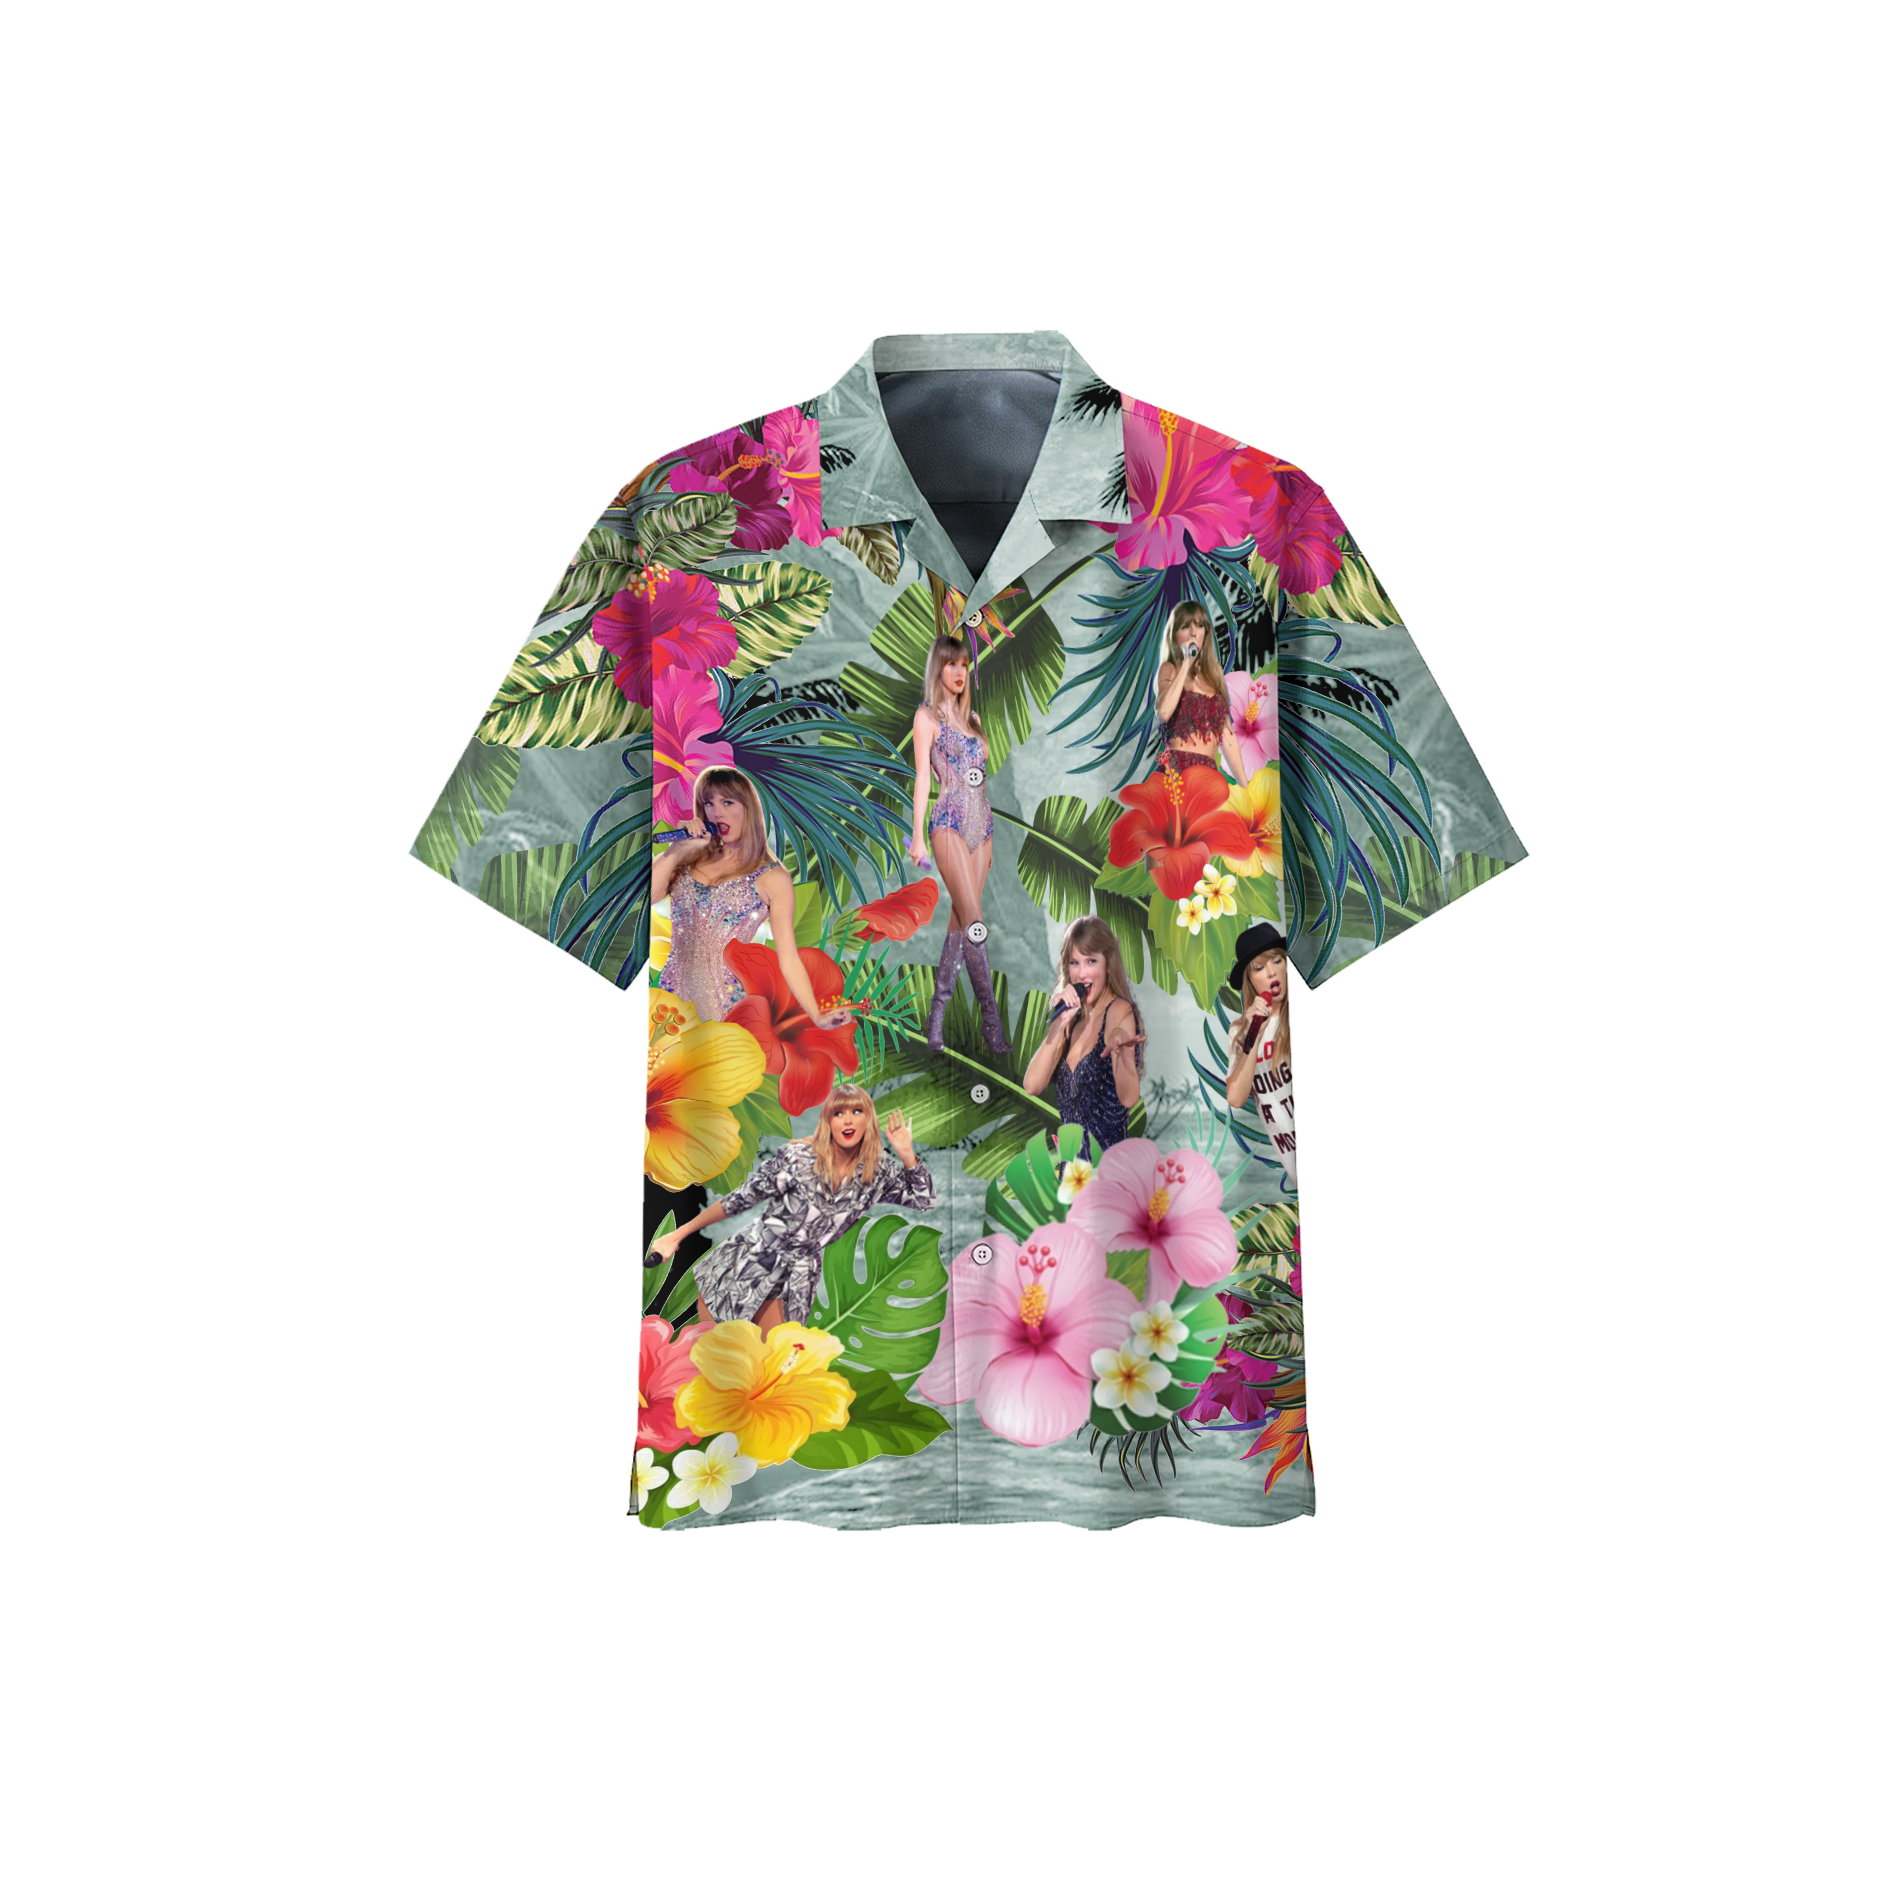 taylor swift tropical hawaiian shirt 9900 GbOAV